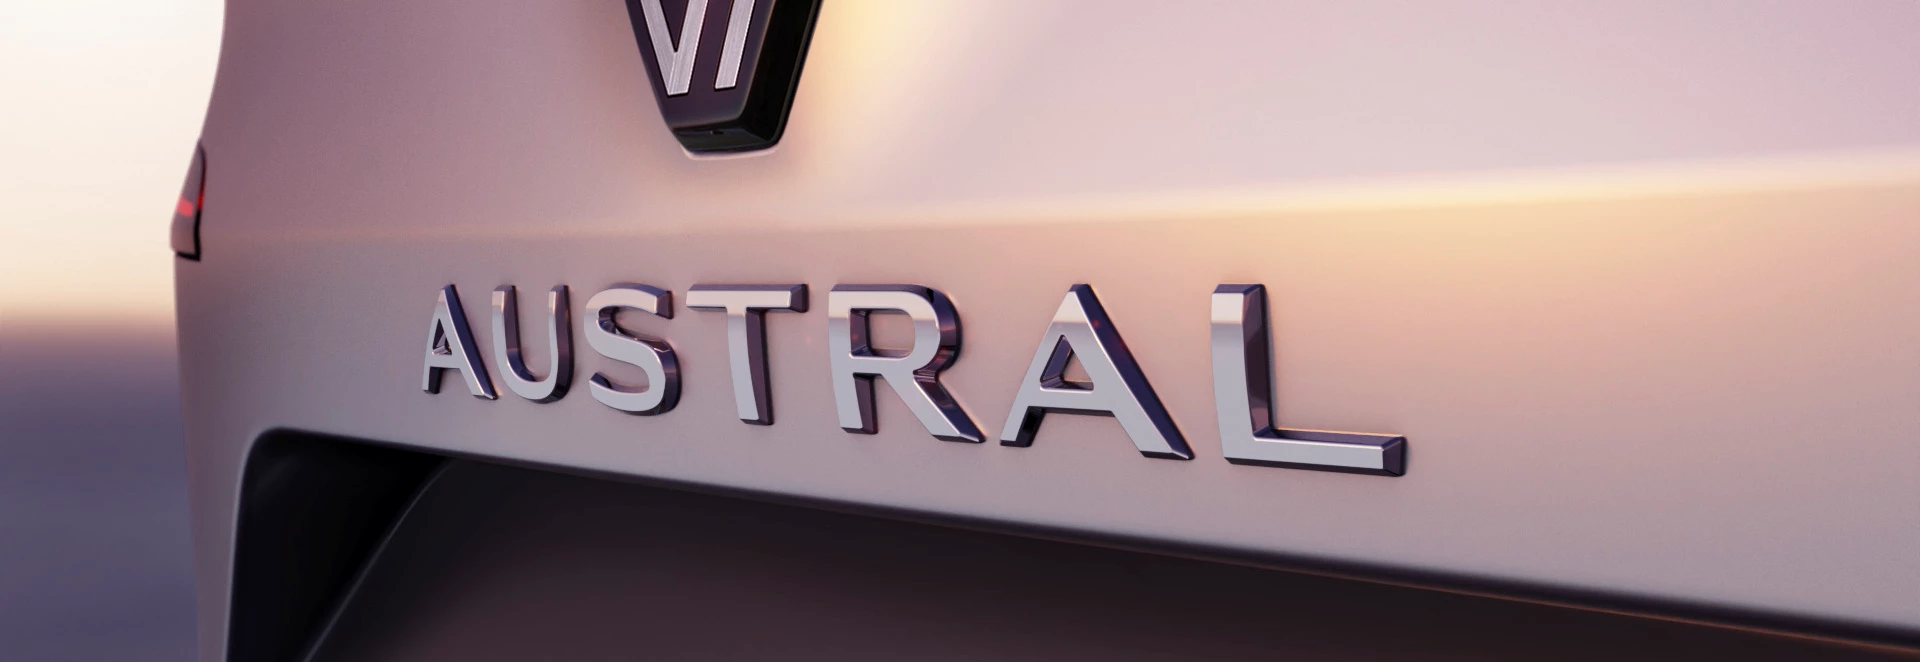 Renault Austral set to replace Kadjar in SUV push 